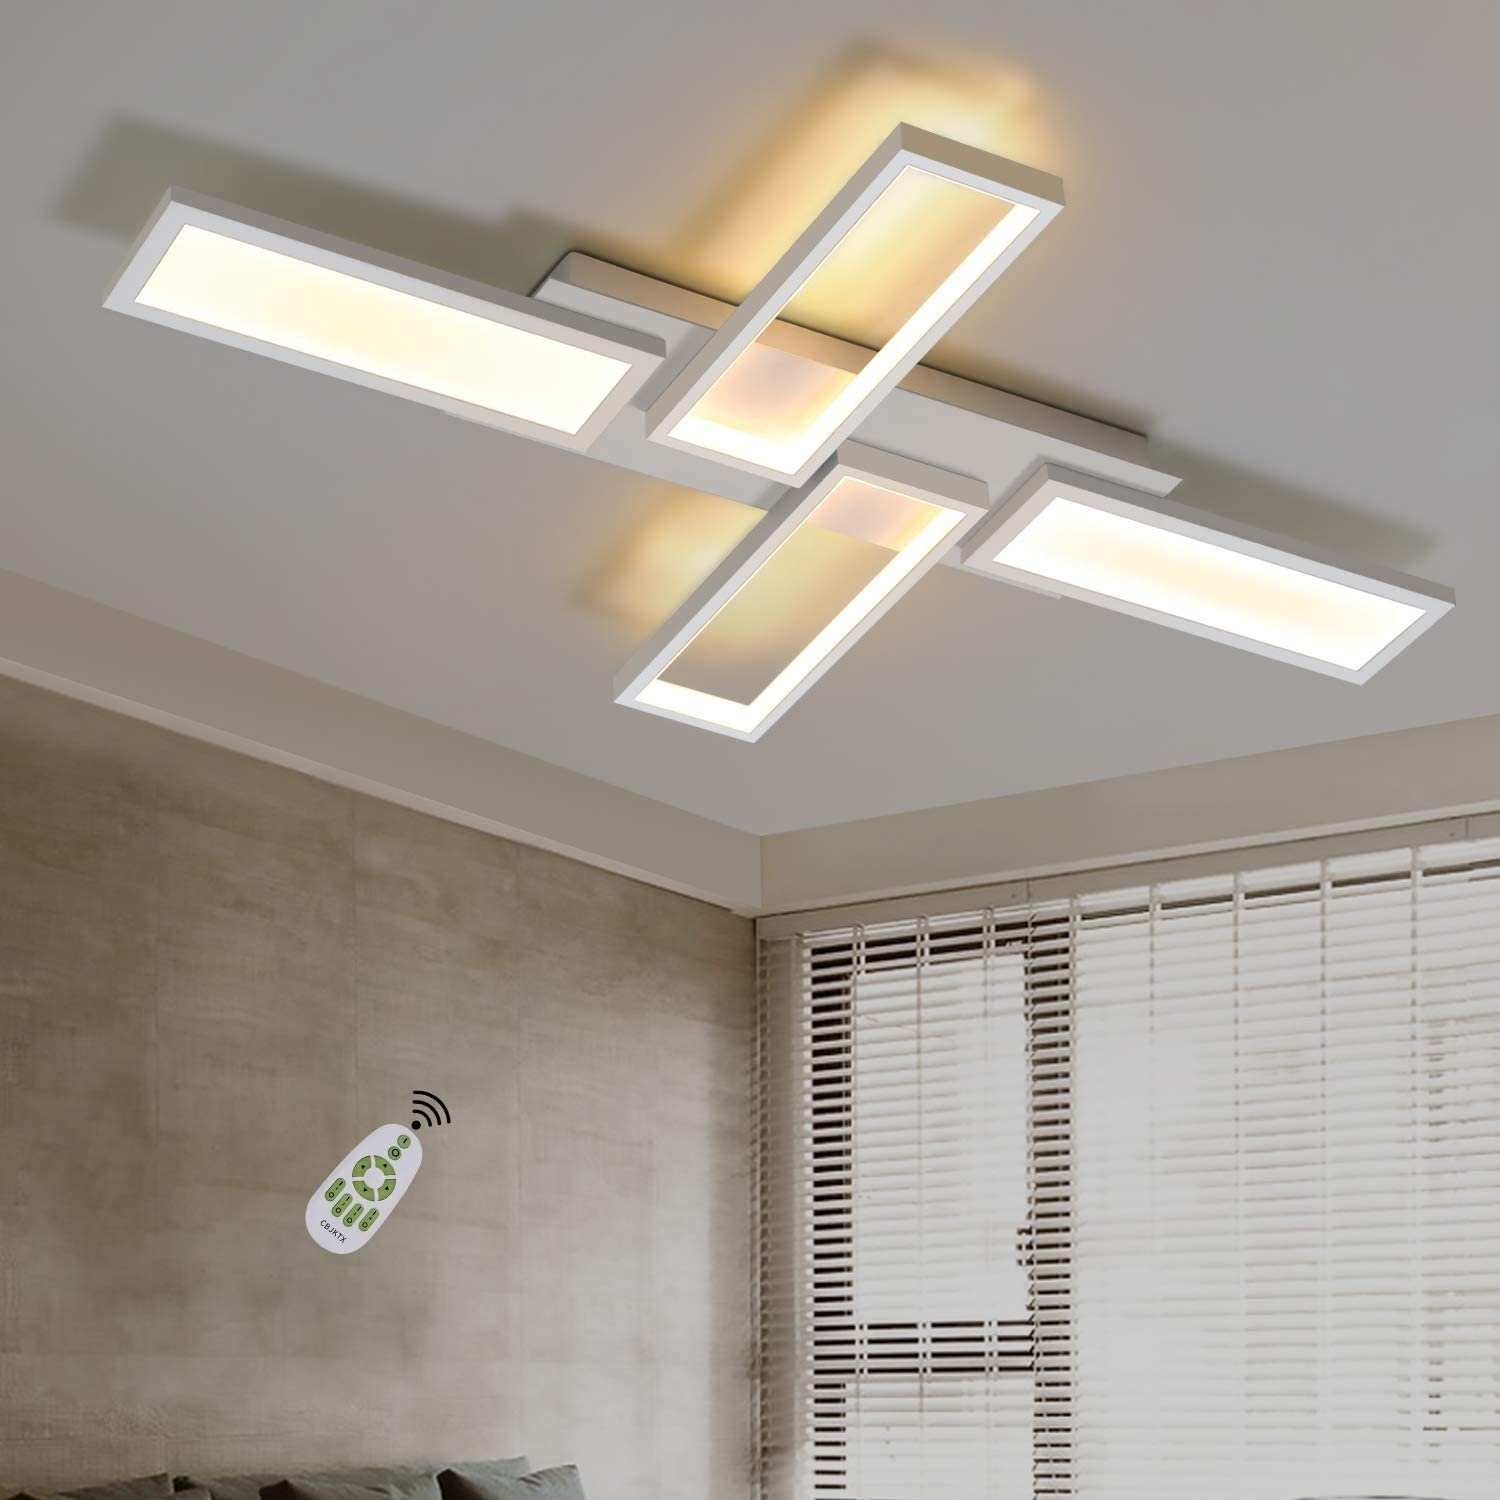 ZMH Deckenleuchten »Deckenleuchte LED Wohnzimmerlampe Weiß Deckenlampe  Dimmbar 58W Eckig Modern Design Schlafzimmerlampe Küchenlampe mit  Fernbedienung Innen Deckenbeleuchtung Bürolampe Flurlampe [Energieklasse  A++]«, LED fest integriert